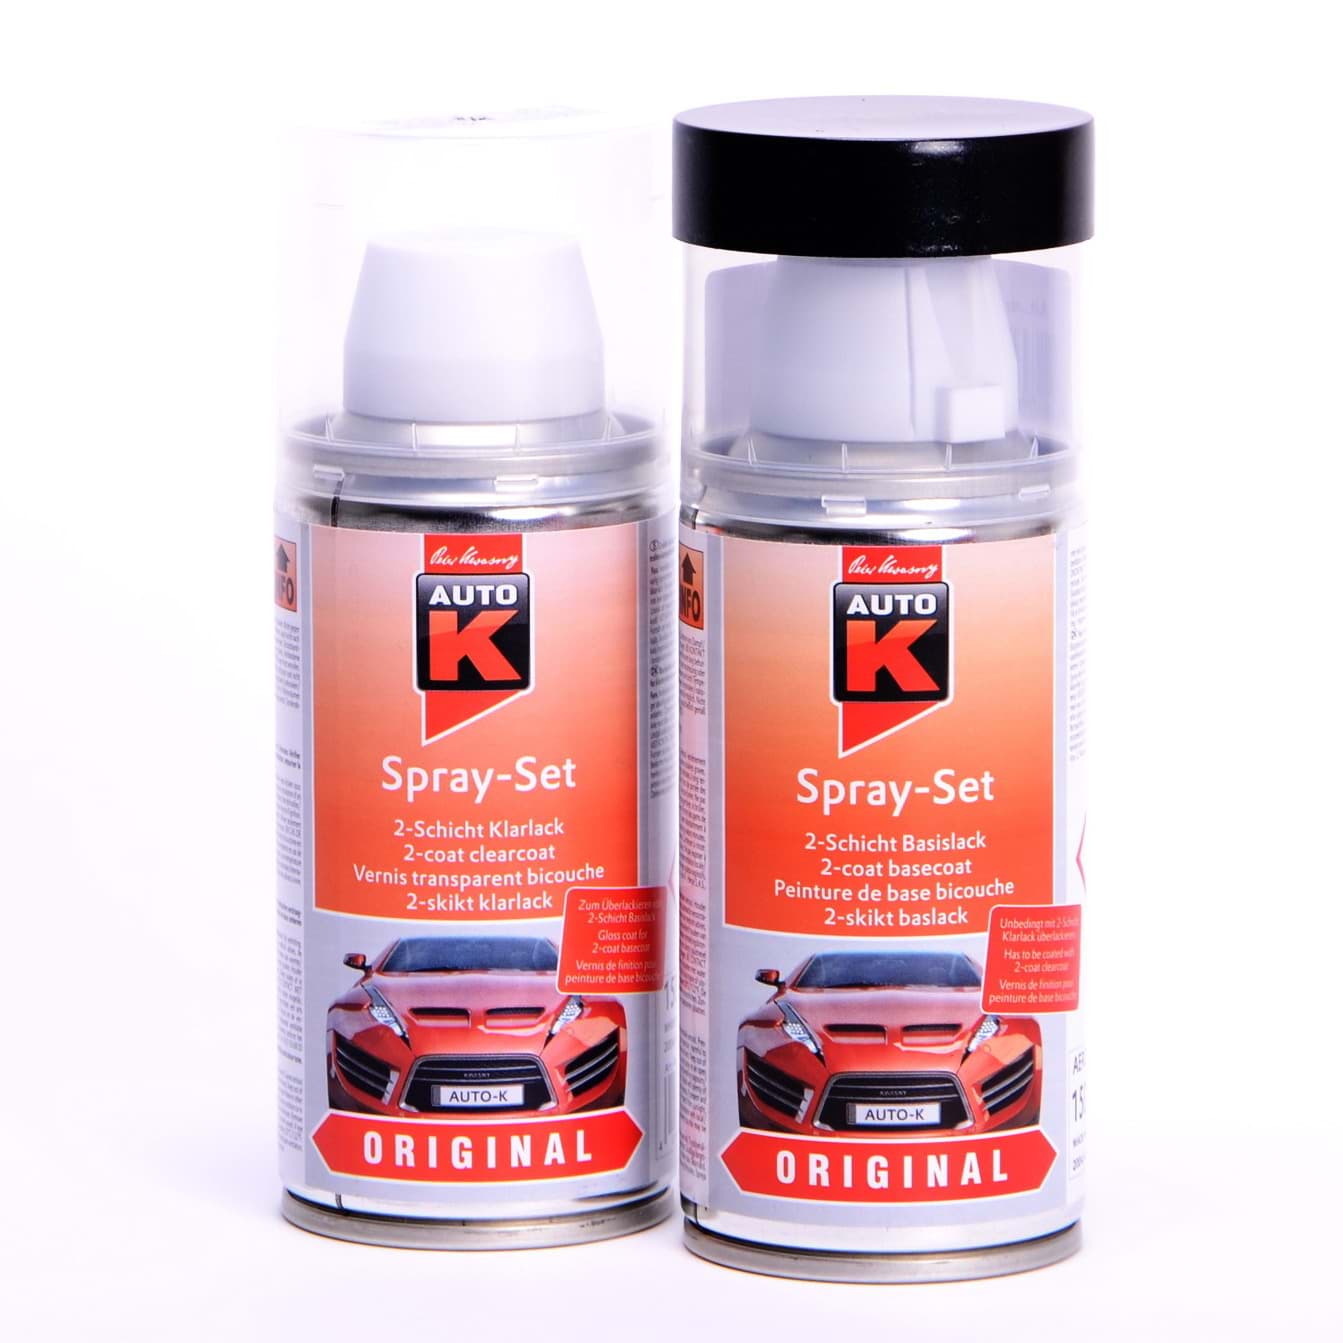 Afbeelding van Auto-K Spray-Set Autolack für Opel 567 Toskanarot 21369